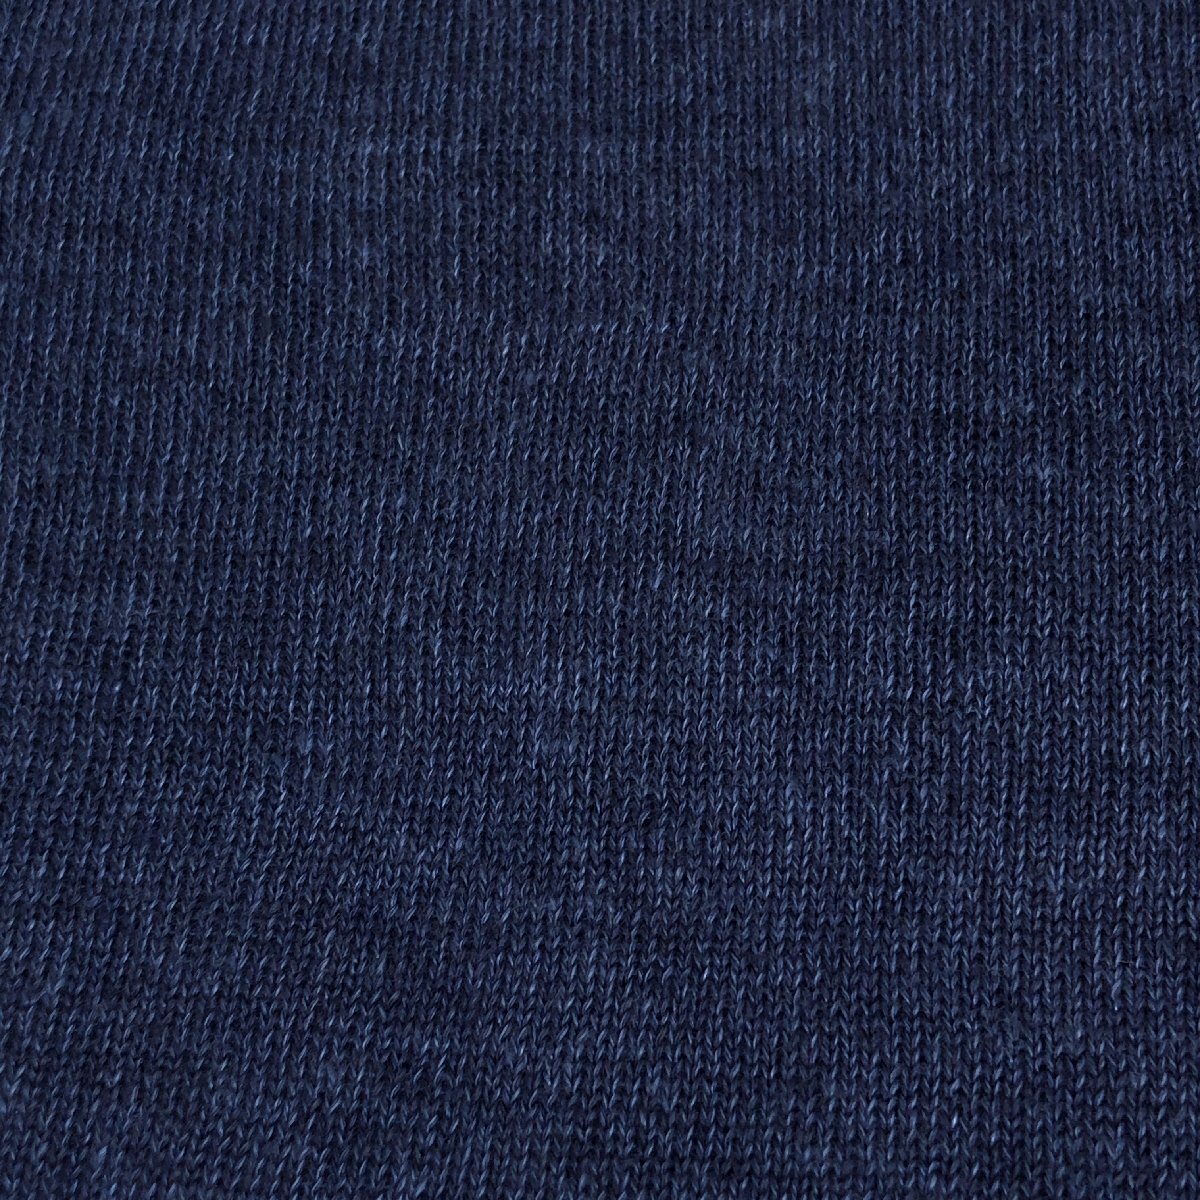 B&Y UNITED ARROWS ユナイテッドアローズ 麻 リネン100% サマーニット セーター M 濃紺 ネイビー 七分袖 ポケット Tシャツ ポケT メンズの画像5